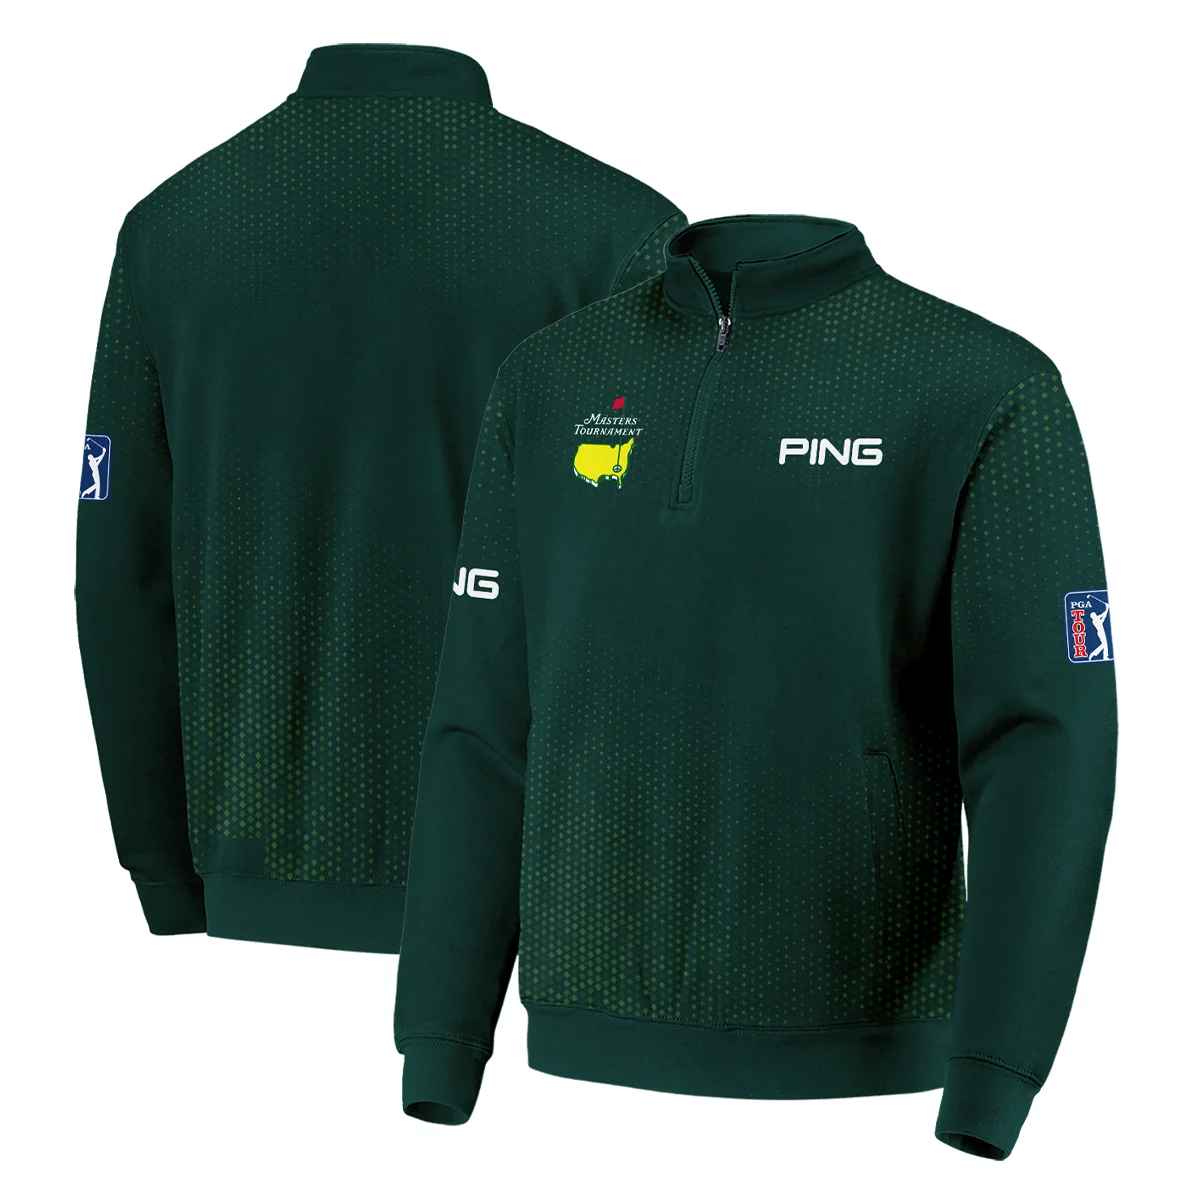 Golf Sport Masters Tournament Ping Zipper Polo Shirt Sports Dinamond Shape Dark Green Zipper Polo Shirt For Men